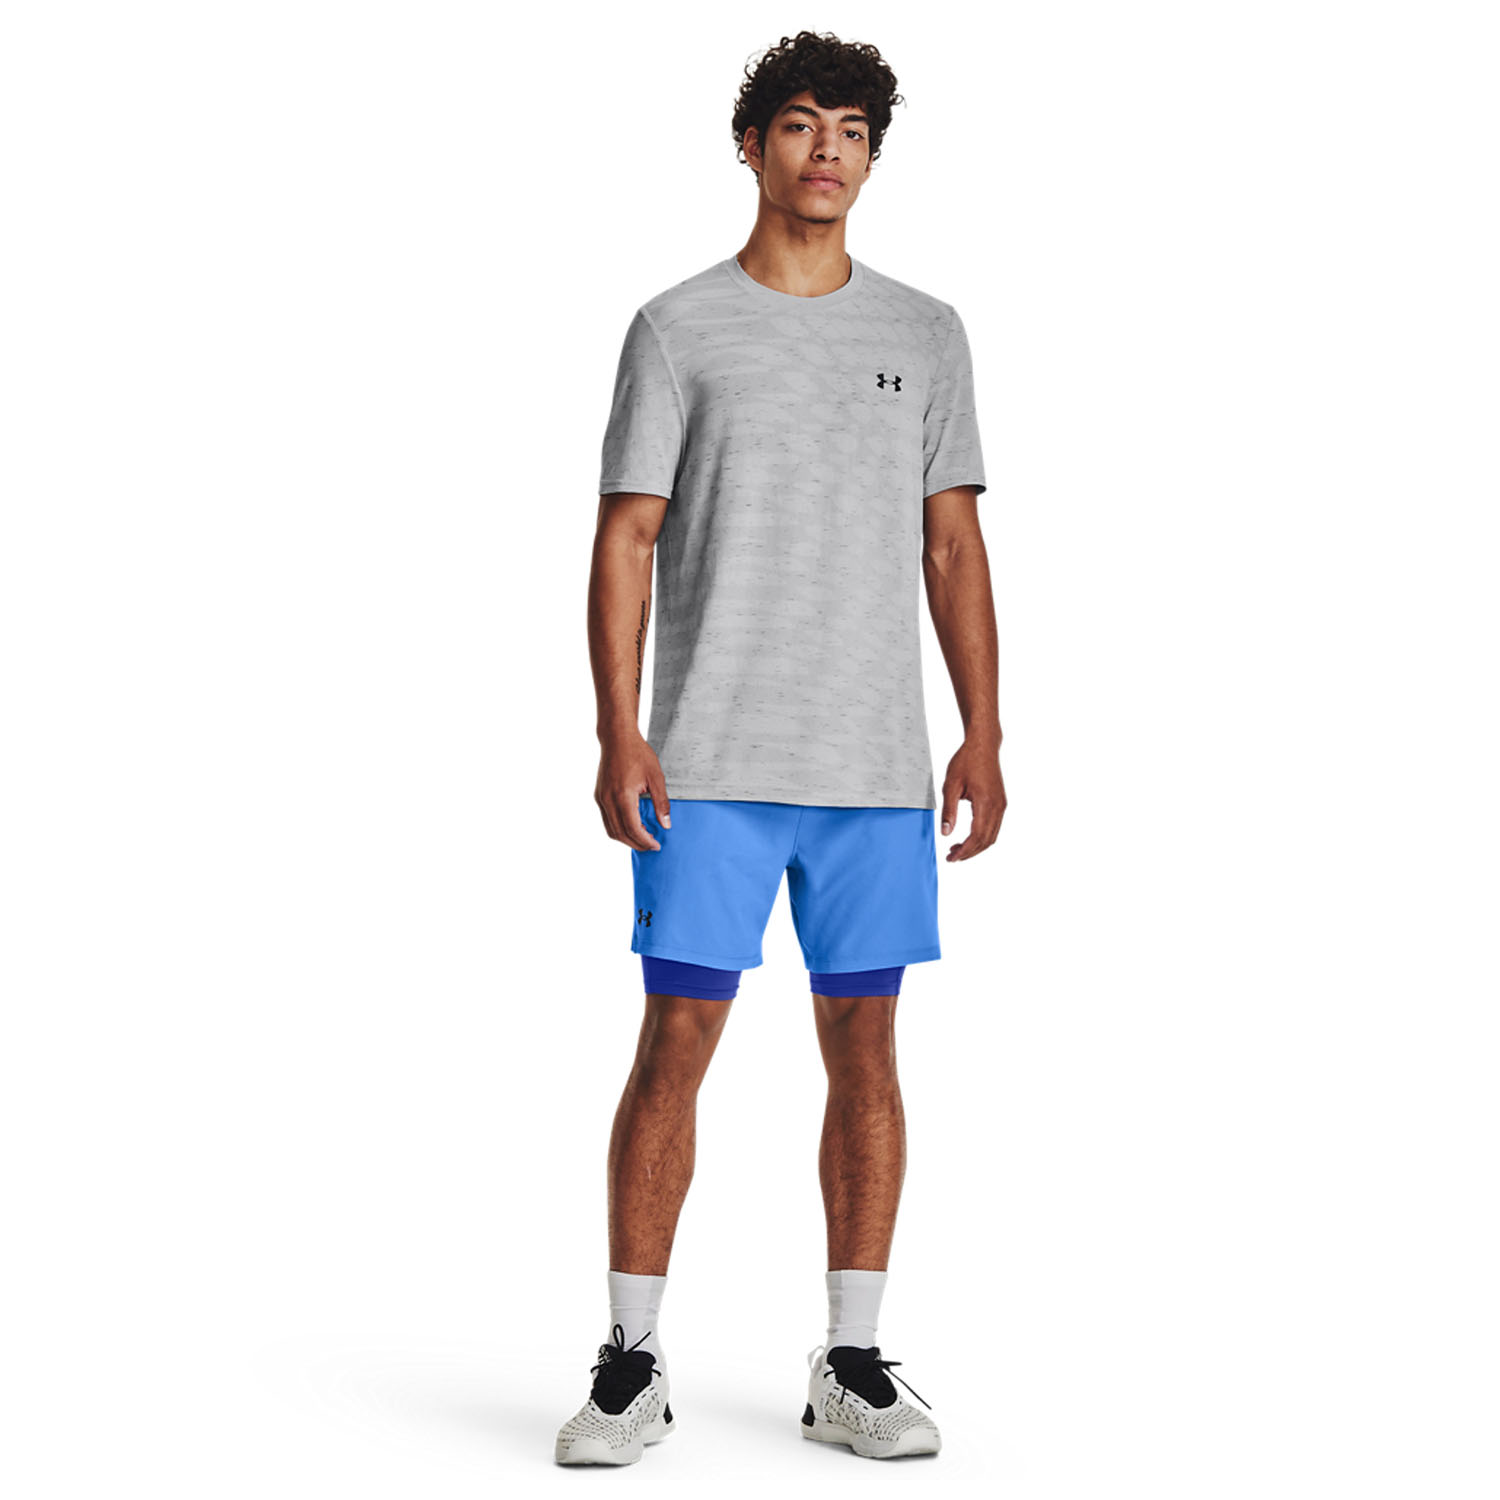 Under Armour Seamless Novelty Men's Tennis T-Shirt - Mod Gray